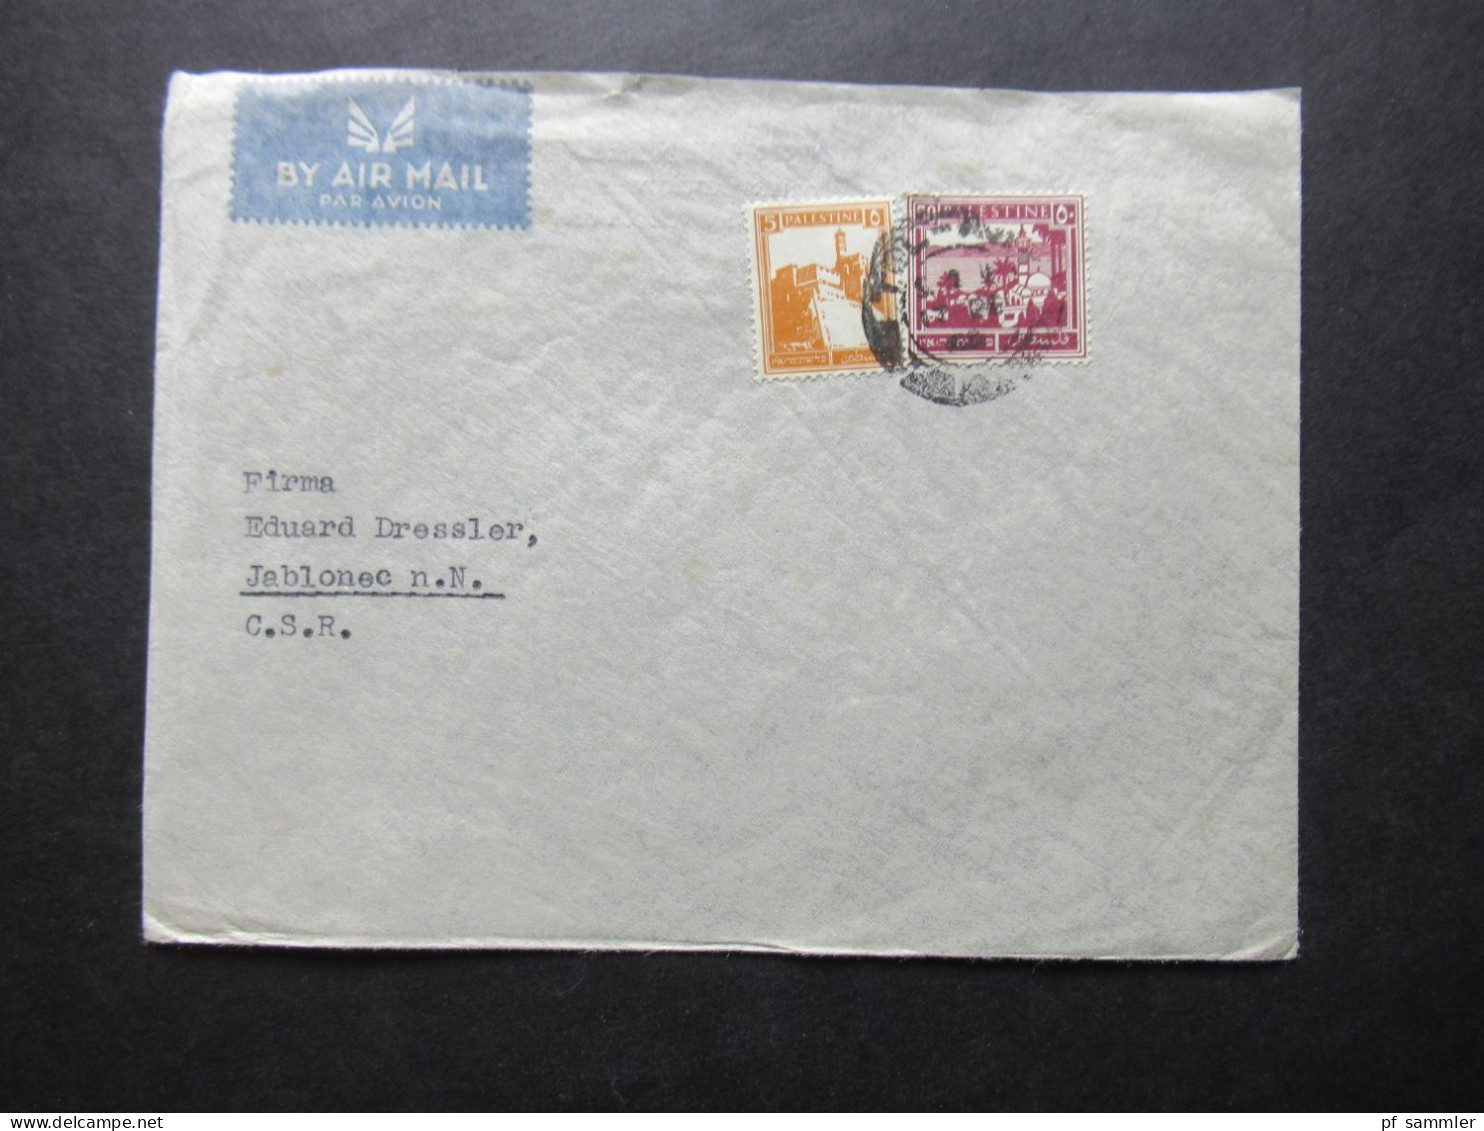 Paästina / Palestine Um 1930 By Air Mail / Luftpost In Die CSR Stempel Tel Aviv Umschlag H. Schrenzel Orient Agency - Palestina